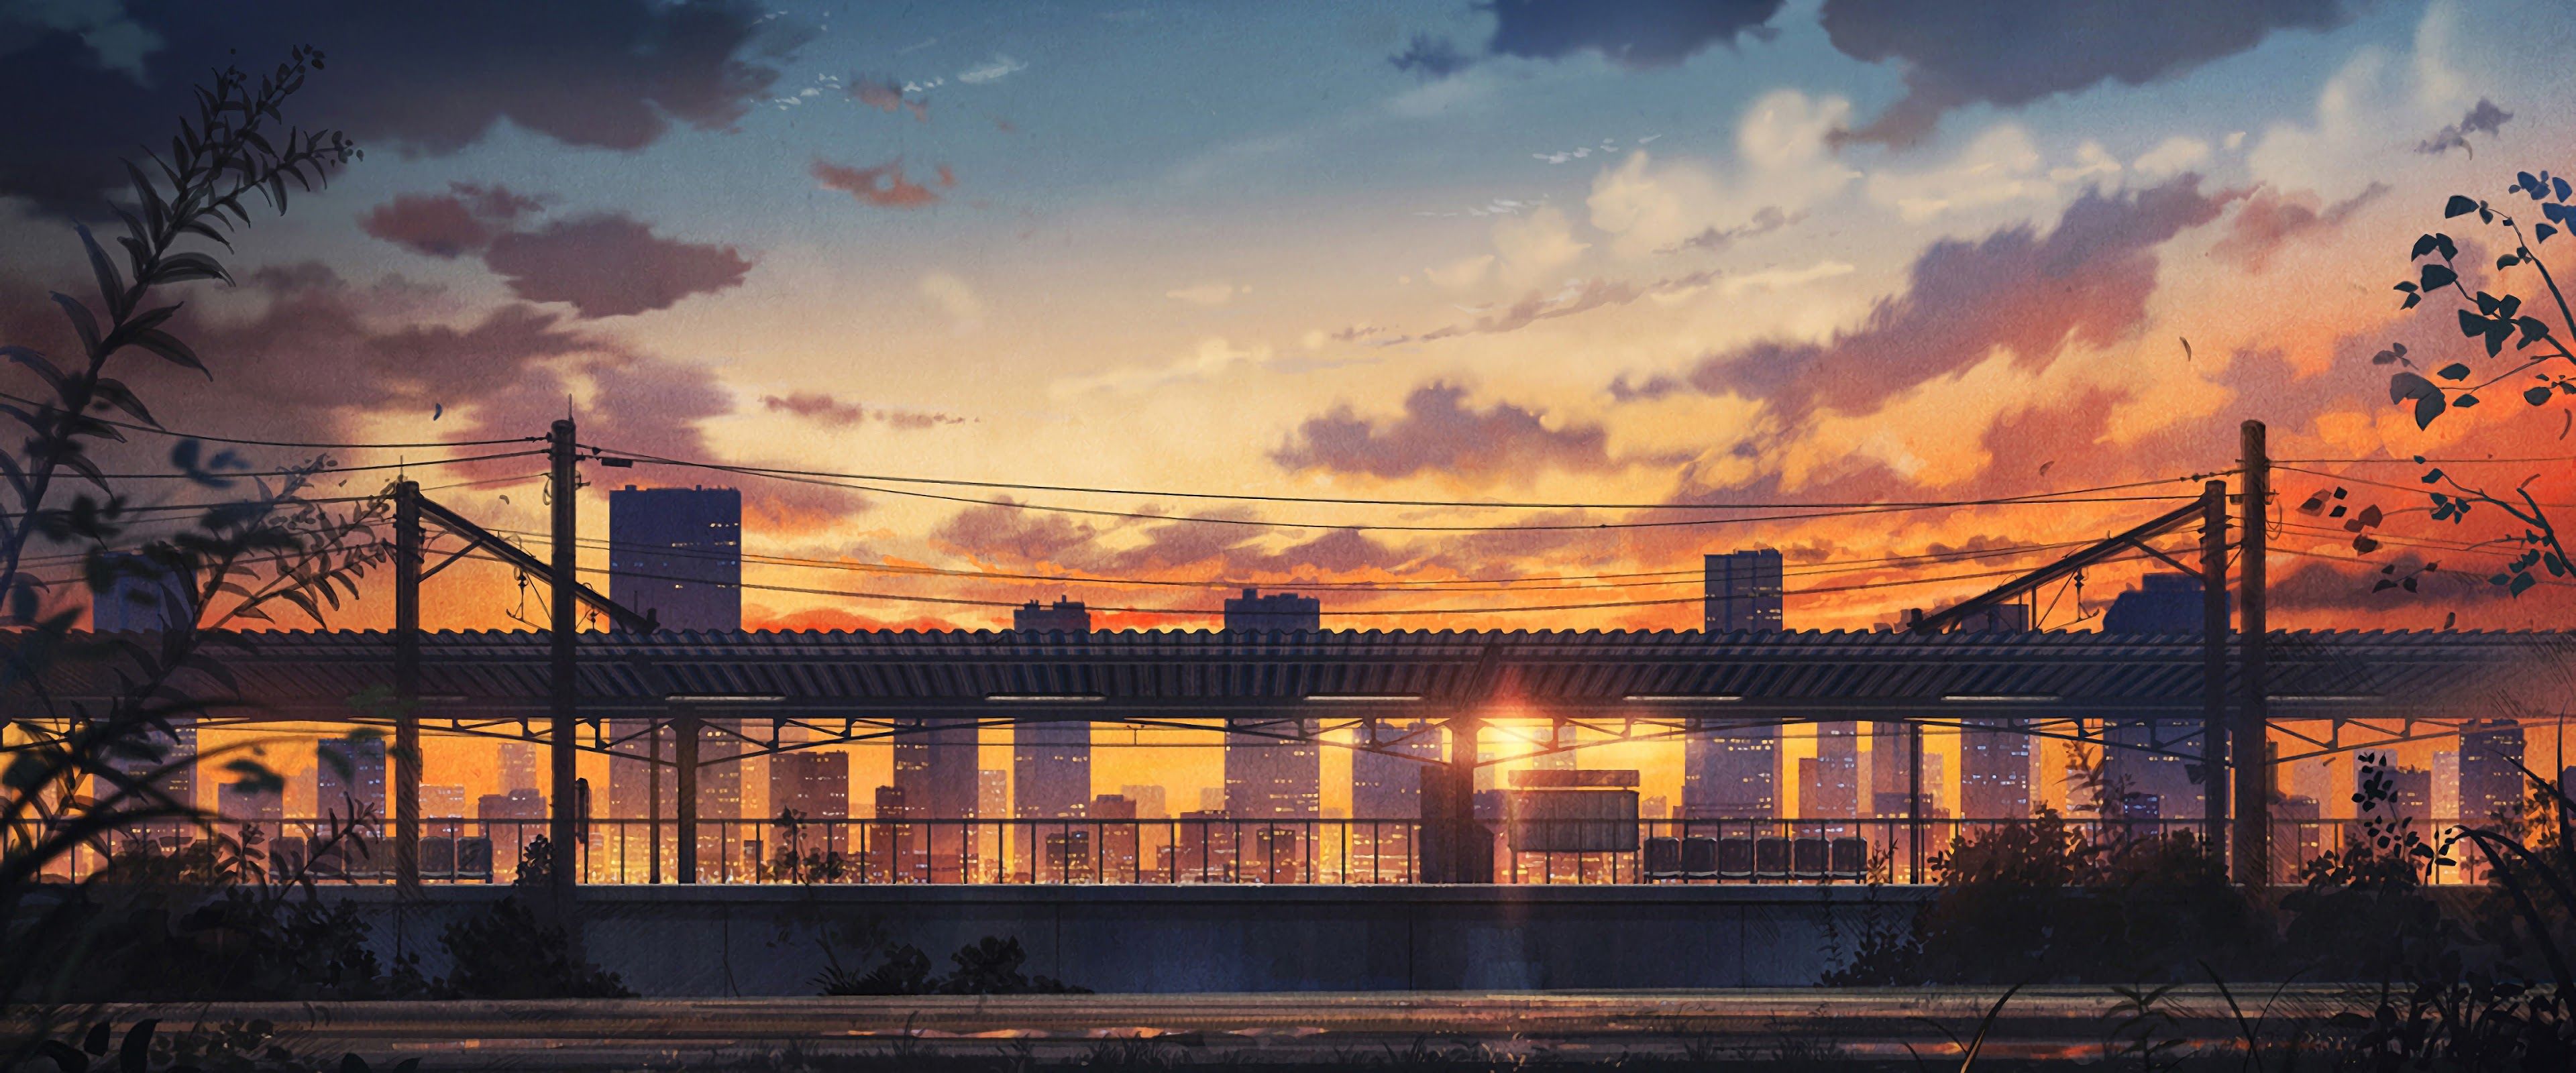 Sunset City Scenery Anime 4K Wallpaper